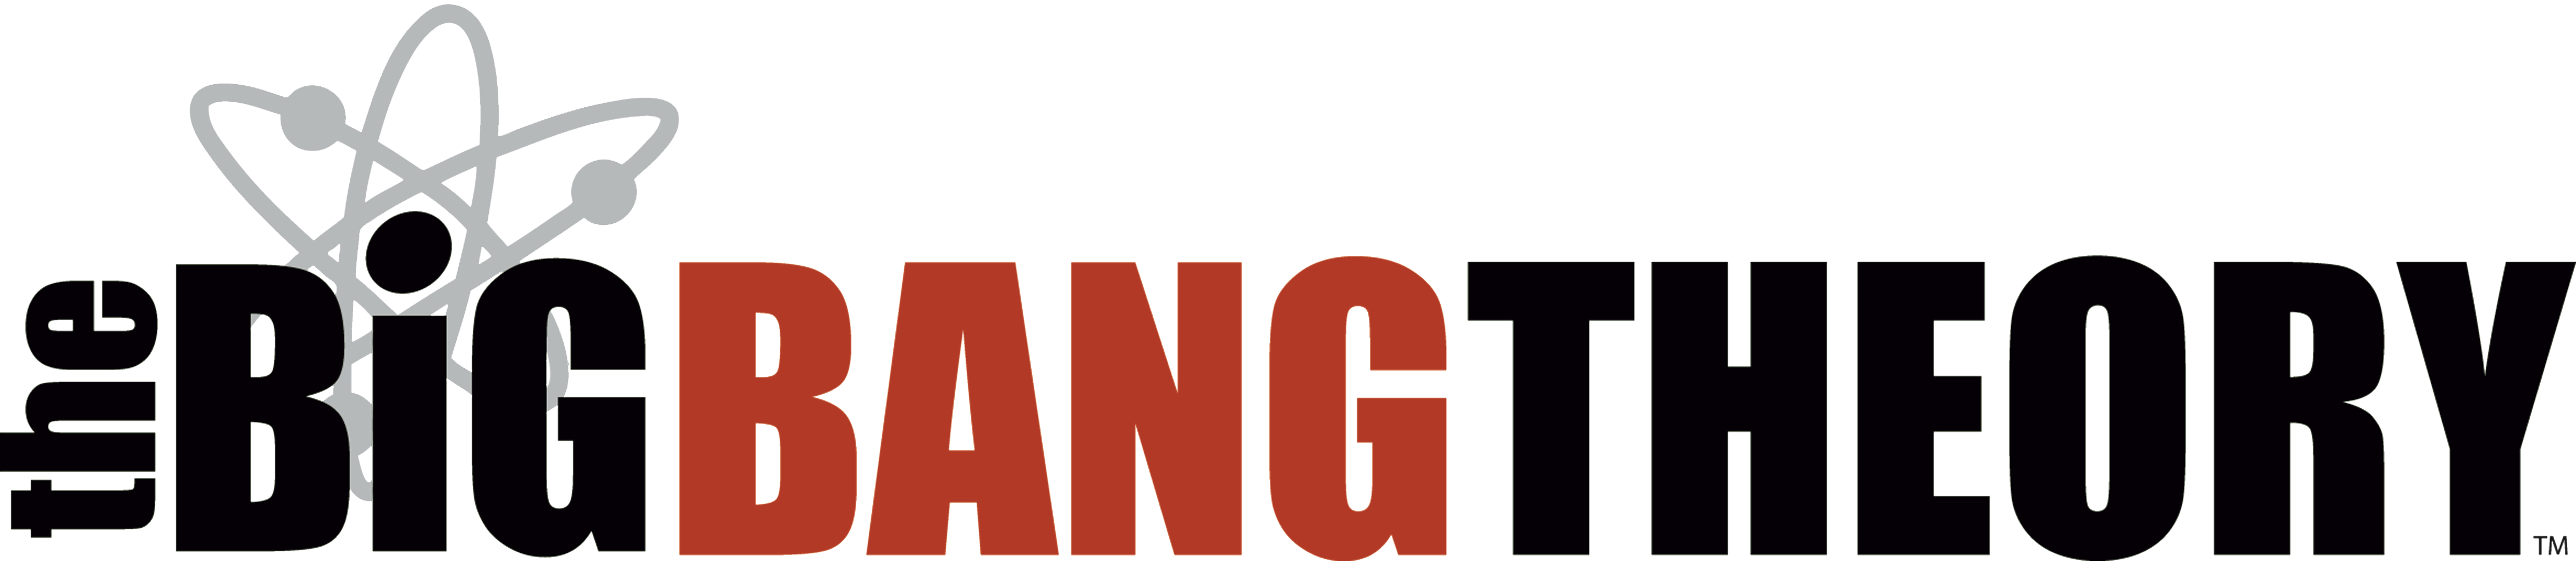 Download PNG image - The Big Bang Theory PNG Photos 